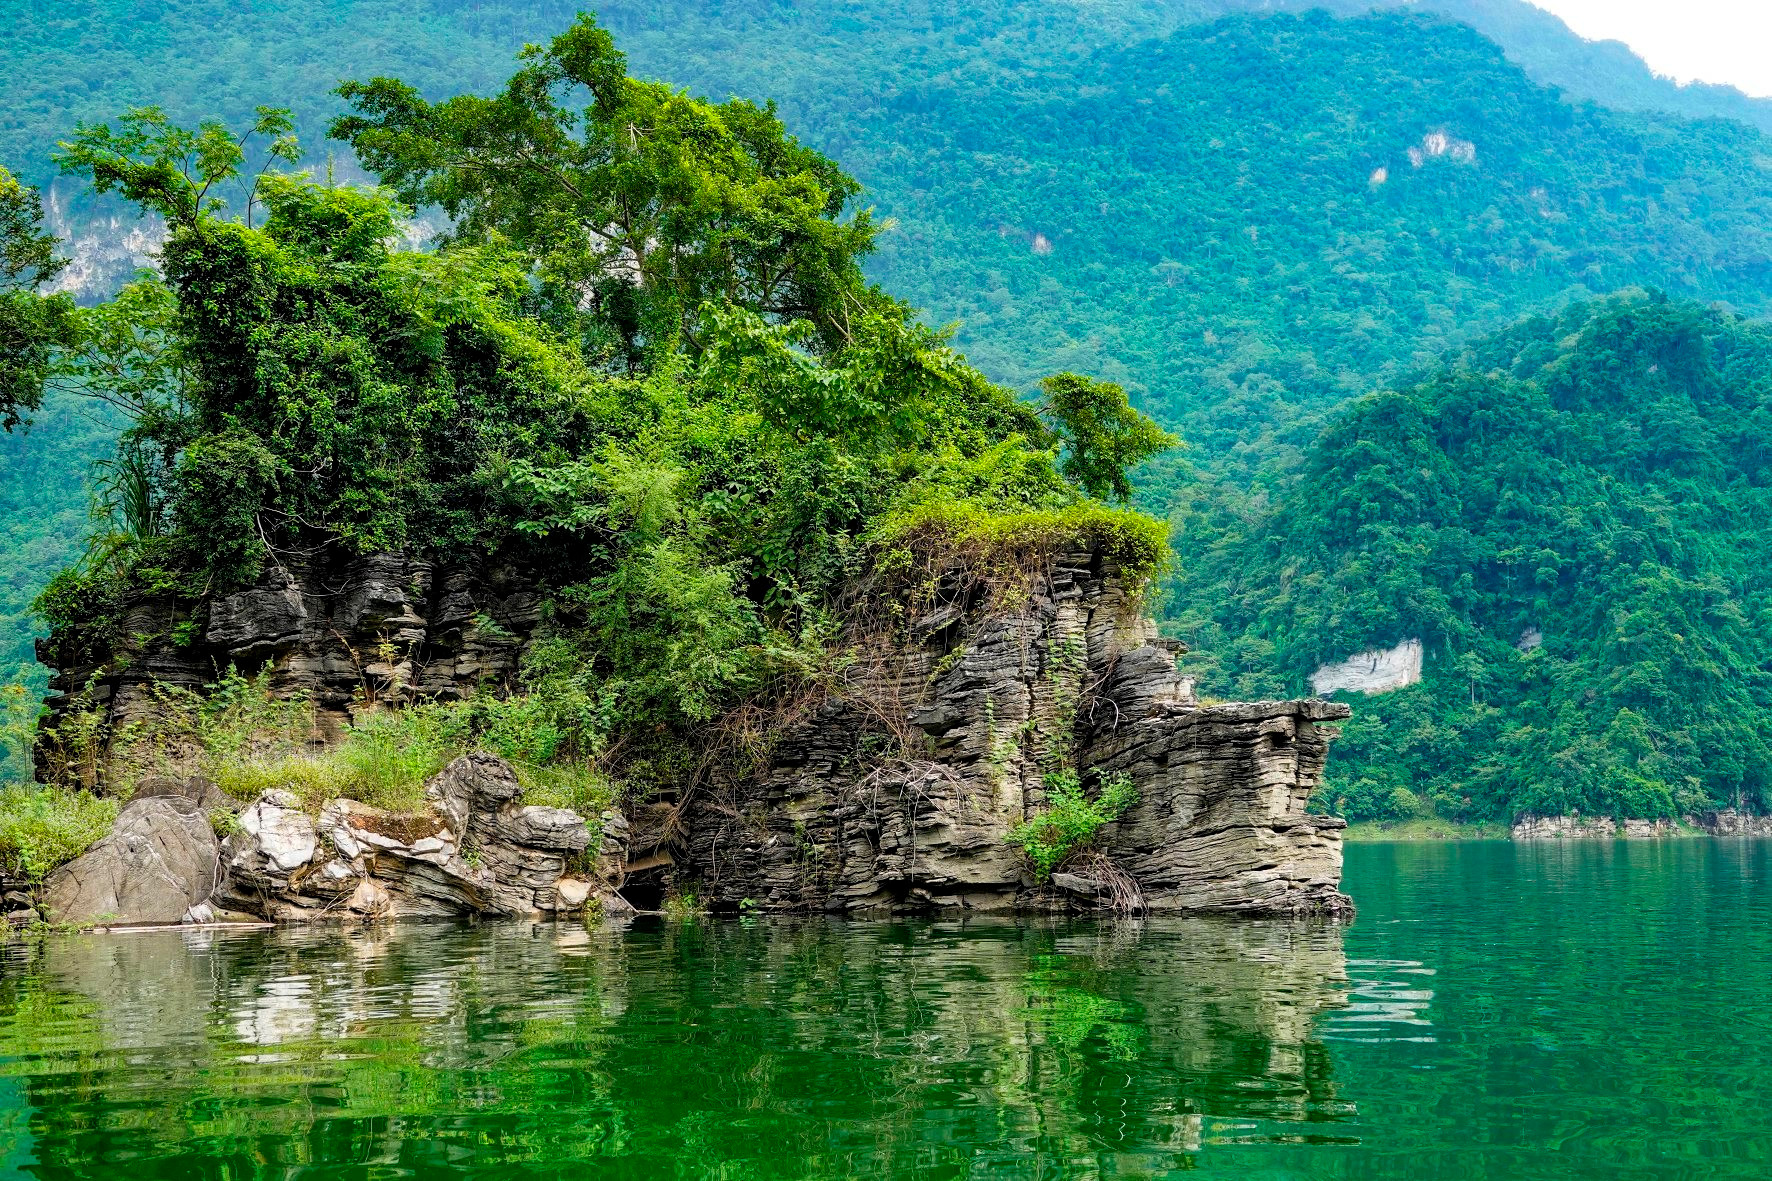 Hồ nước ngọt nhân tạo lớn nhất Tuyên Quang hiện ra đẹp như phim, có ngọn thác đổ, rừng nguyên sinh - Ảnh 6.